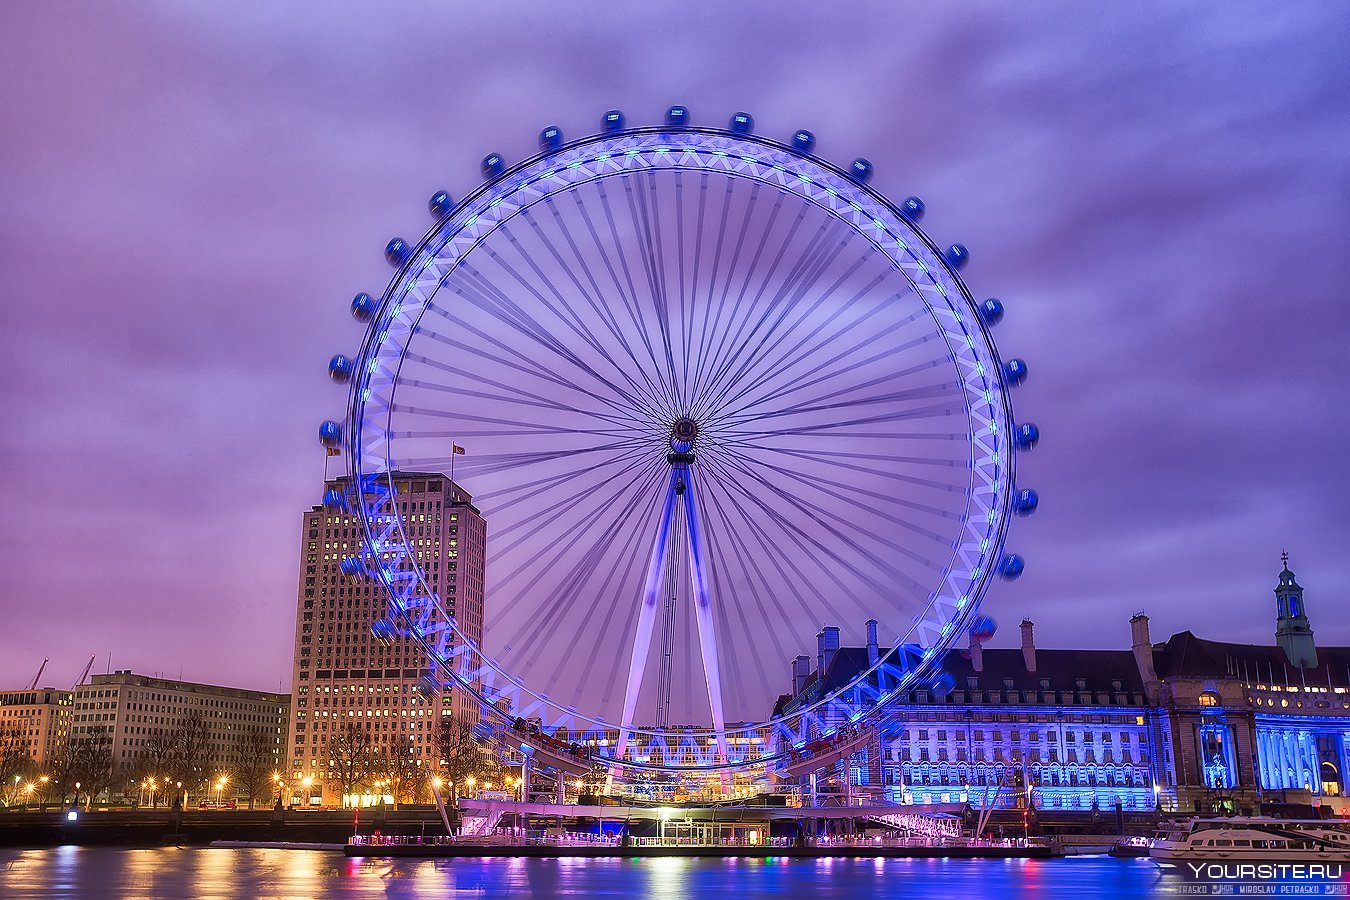 One of the london s. Око Лондона колесо обозрения. Колесо обозрения "Лондонский глаз" (London Eye). Великобритания колесо обозрения London Eye. Лондонский глаз достопримечательности Лондона.